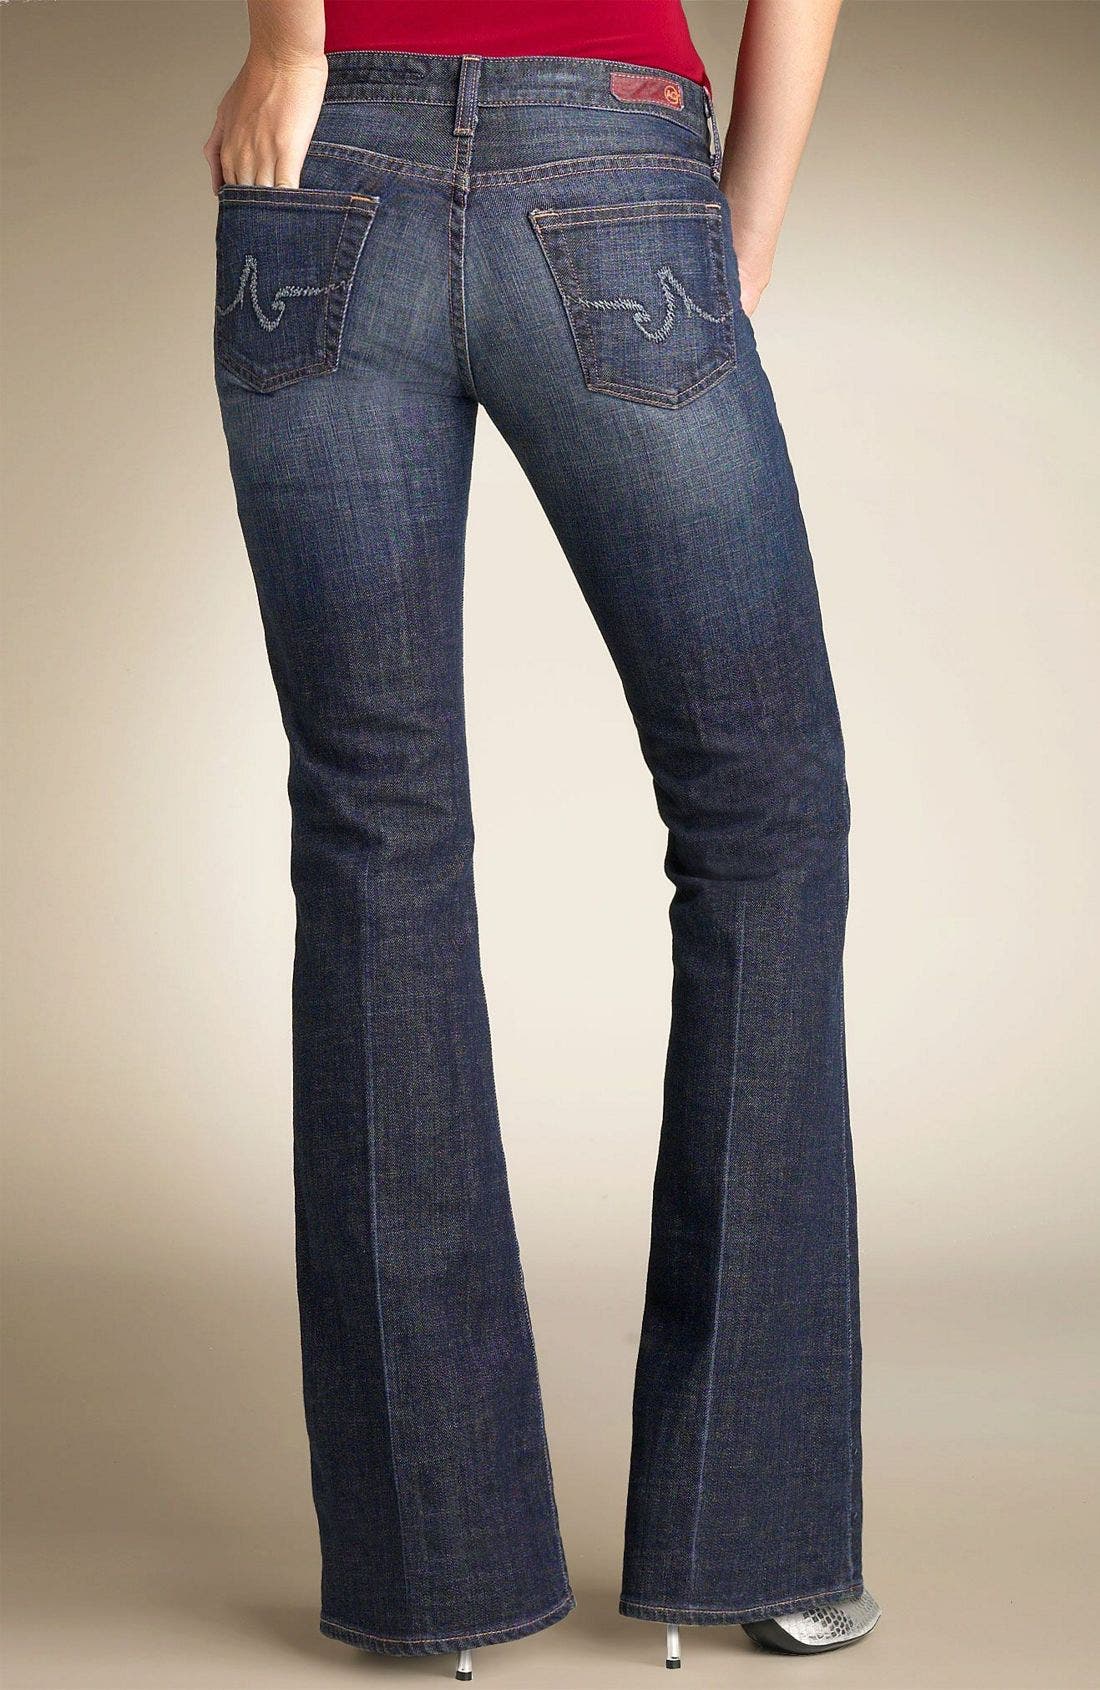 a goldschmied jeans